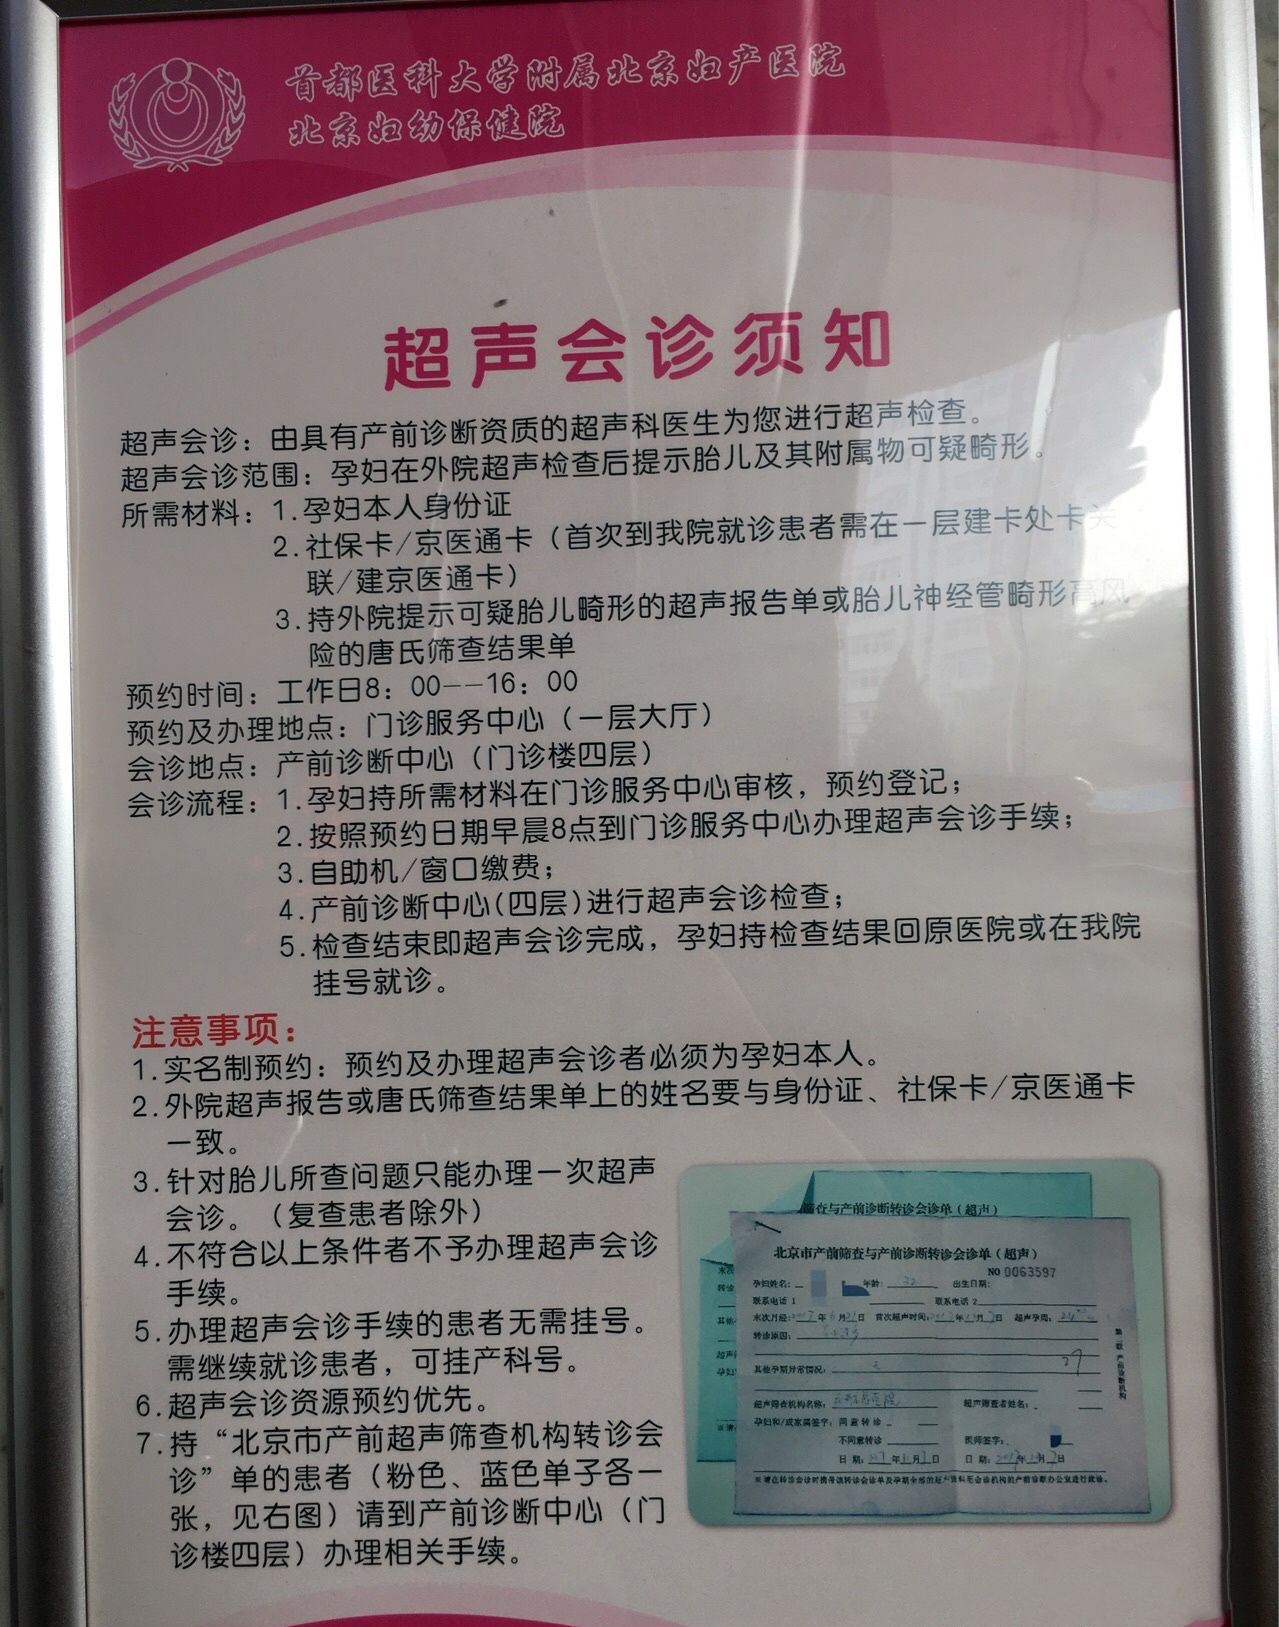 包含北京妇产医院找黄牛挂号可以帮忙建档吗；优化疫情防控新举措能够缓解各地疫情处置当中遇到的瓶颈和障碍问题